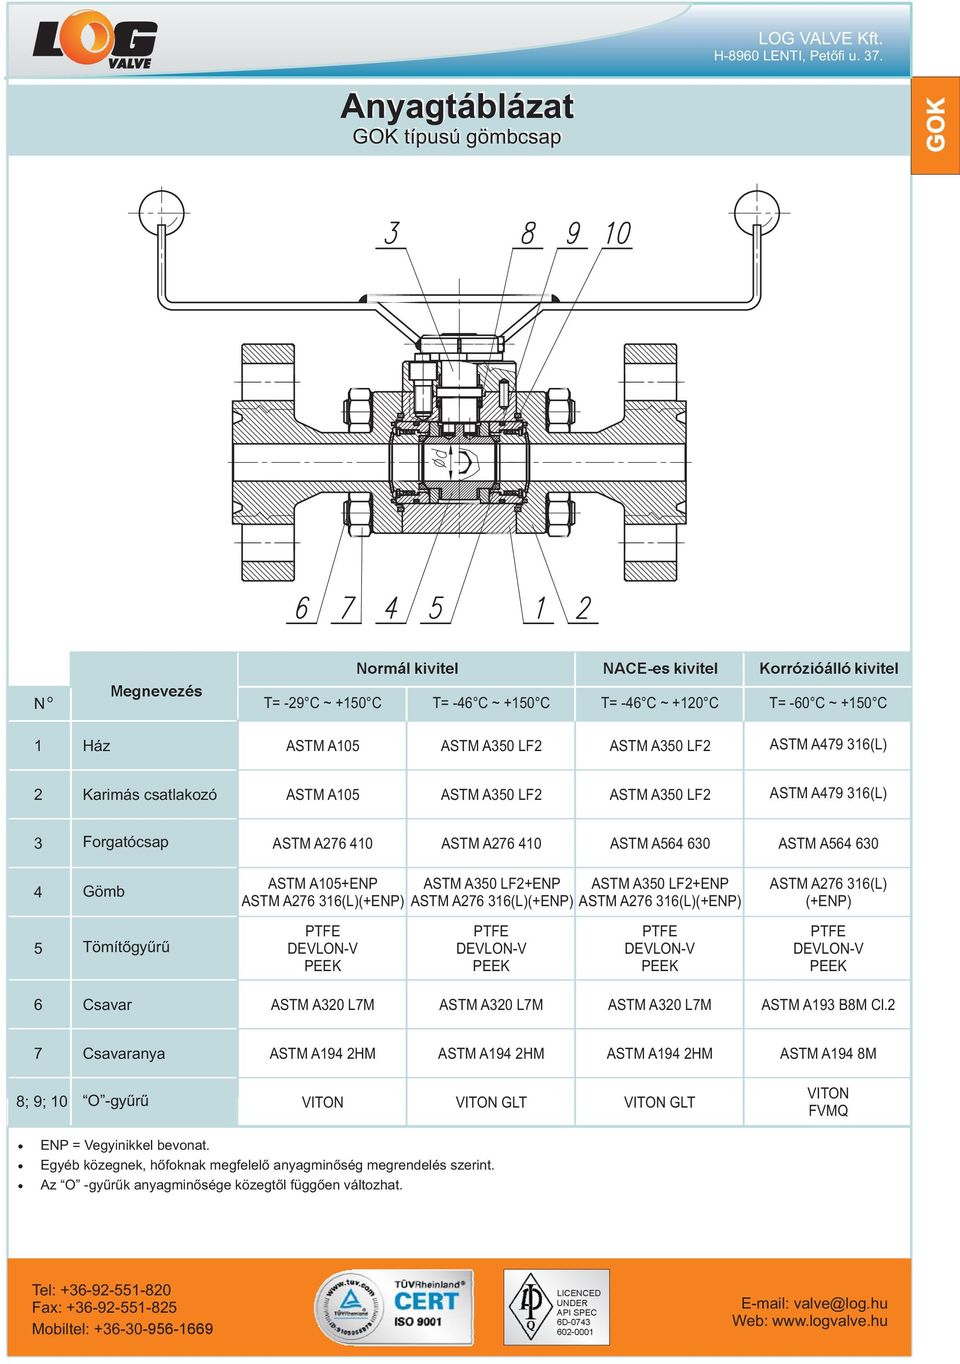 Karimás csatlakozó ASTM A5 ASTM A479 316(L) 3 Forgatócsap ASTM A564 630 ASTM A564 630 4 Gömb ASTM A5+ENP (+ENP) +ENP (+ENP) +ENP (+ENP) (+ENP) 5 Tömítőgyűrű PTFE DEVLON-V PEEK PTFE DEVLON-V PEEK PTFE